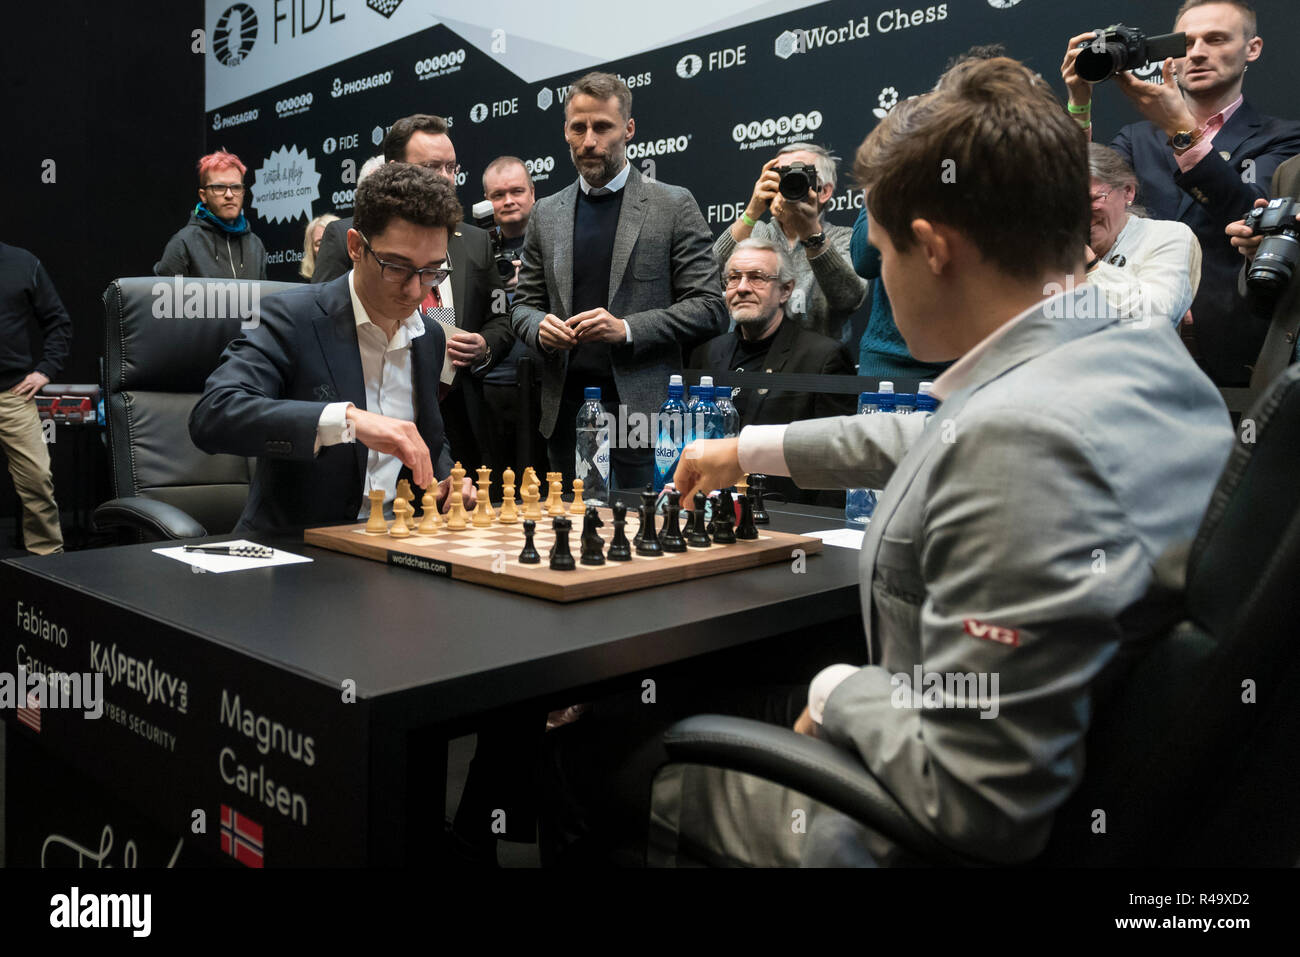 Caruana - Carlsen, Wijk 2015: Grandmaster Analysis 